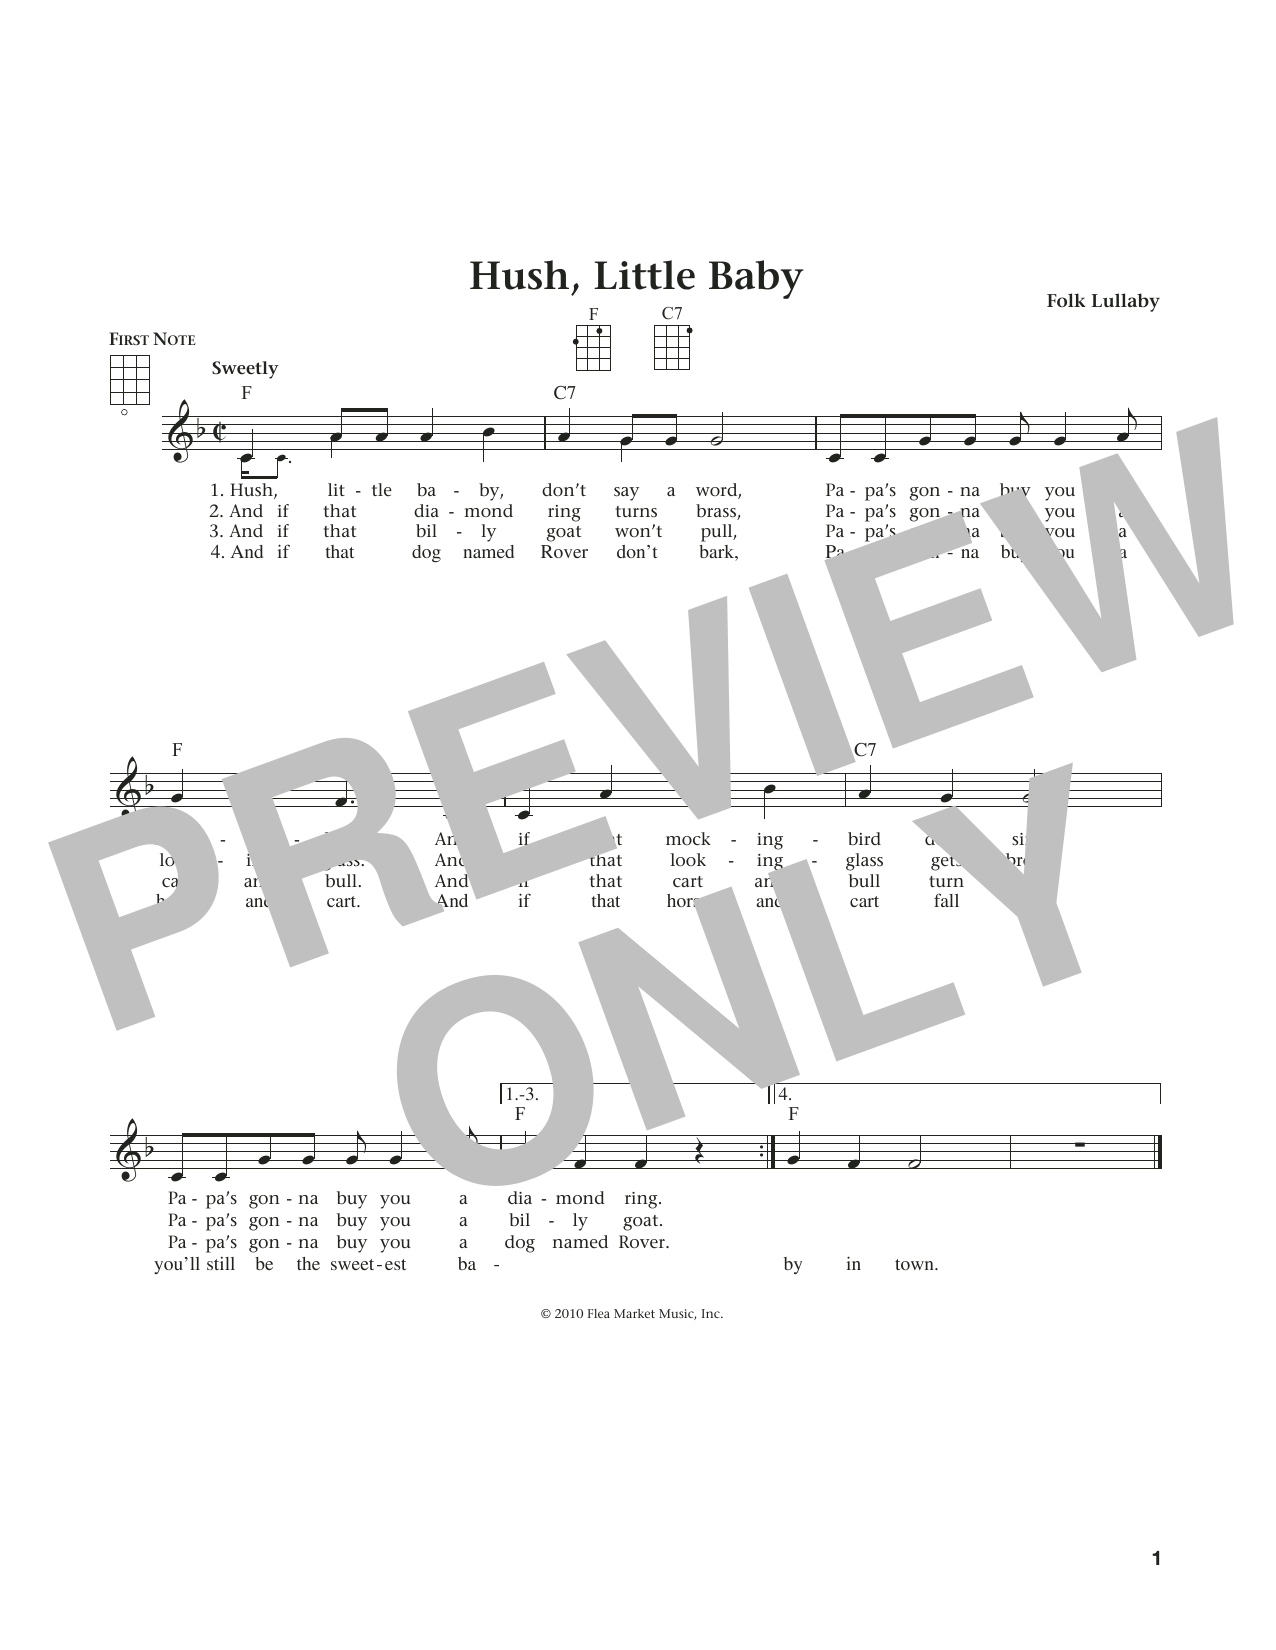 Carolina Folk "Hush, Little Baby (from The Daily Ukulele) (arr. Liz and Beloff)" Sheet Music PDF Notes, Chords | Folk Score Ukulele Download Printable. 184362